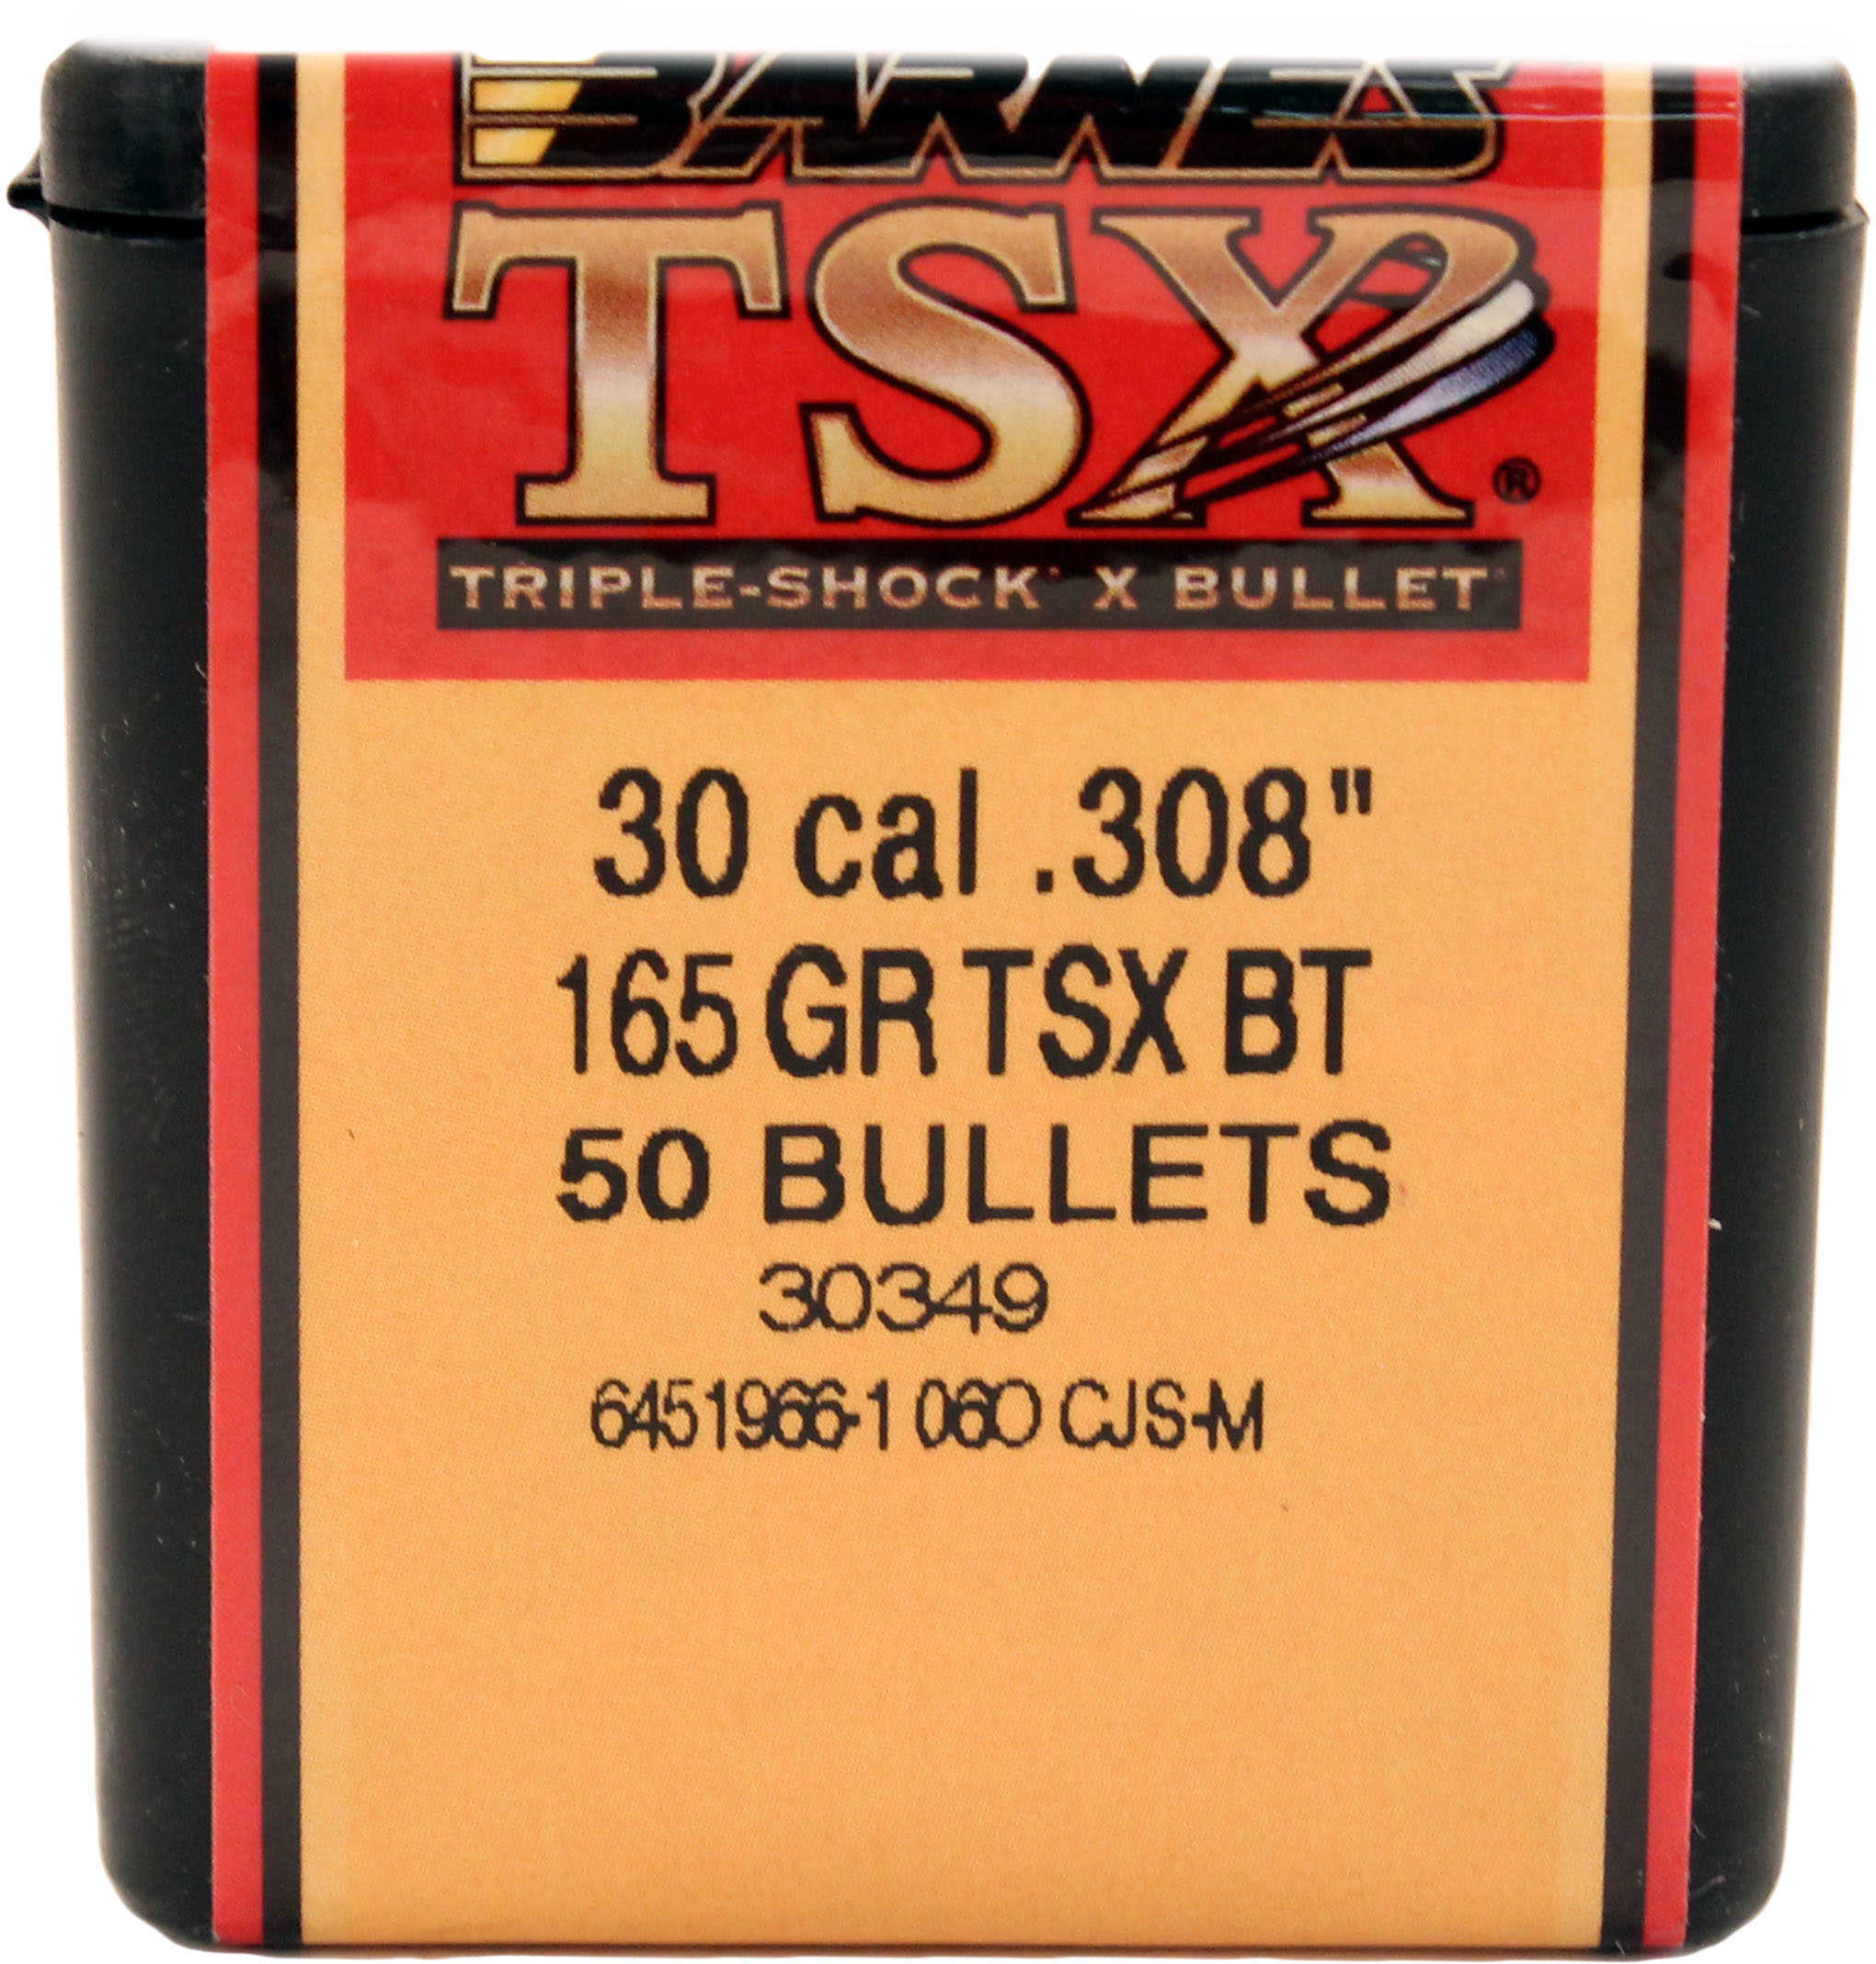 Barnes All Copper Triple-Shock X Bullet 30 Caliber 165 Grain Boattail 50/Box Md: 30843